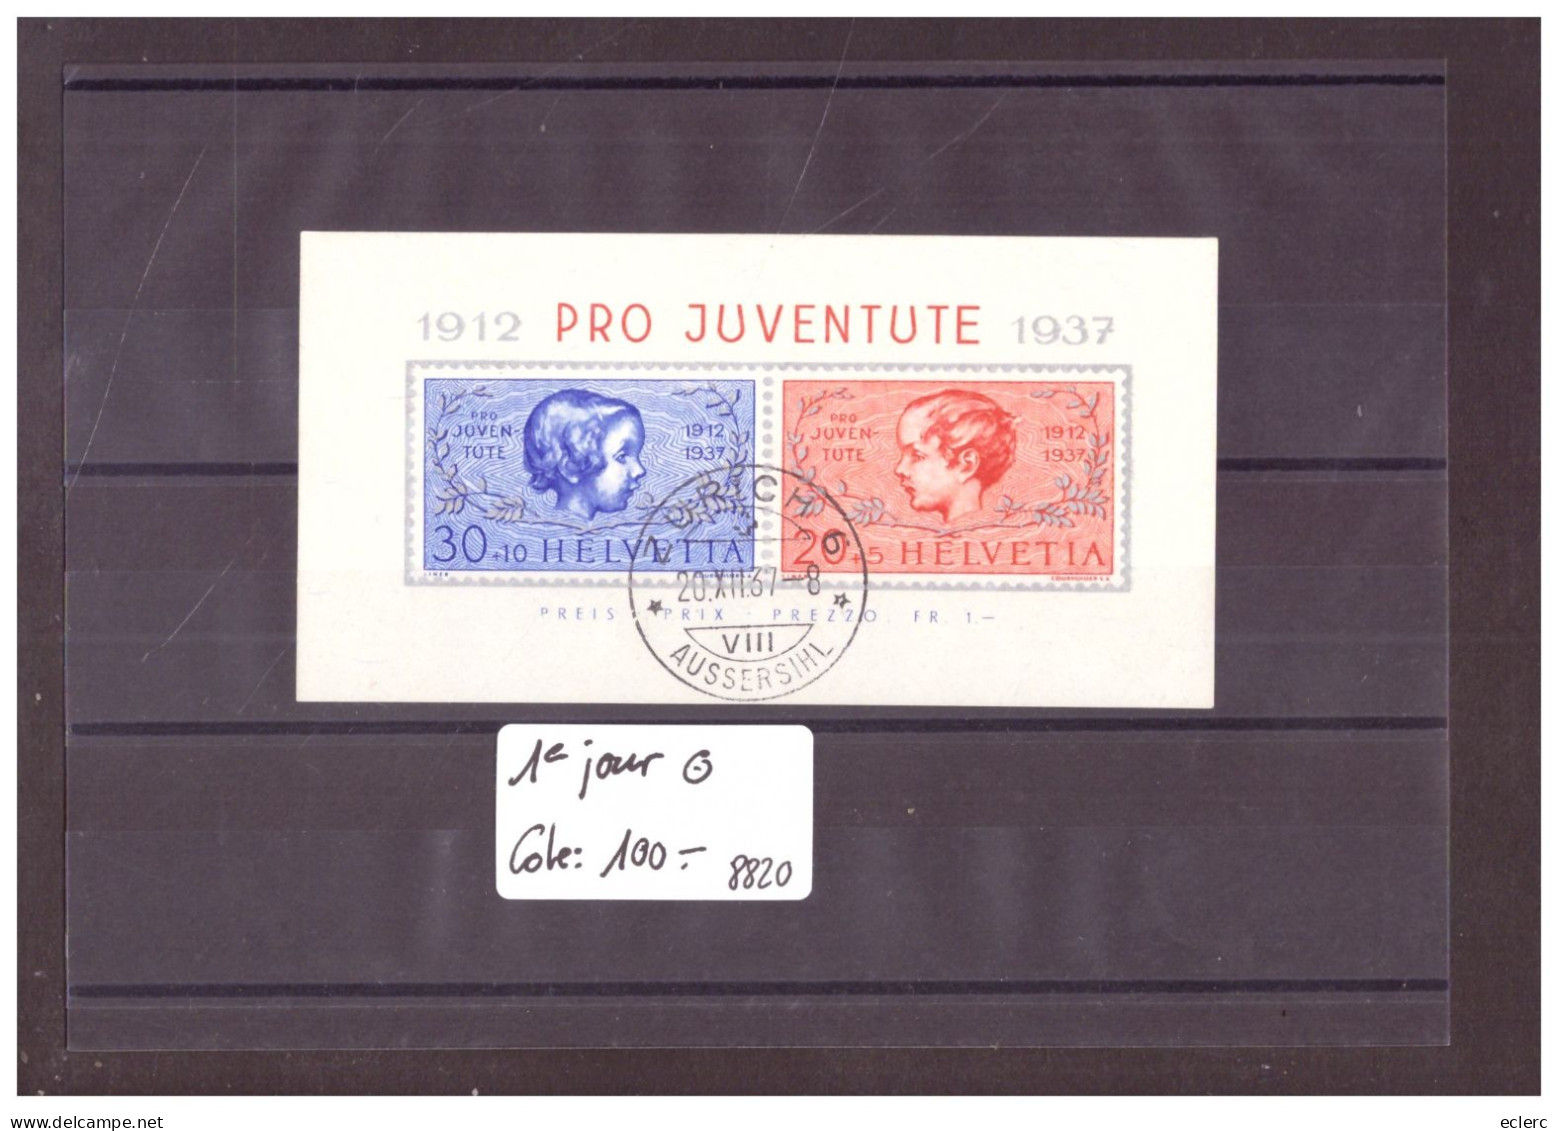 BLOC PRO JUVENTUTE 1937 OBLITERE PREMIER JOUR  - COTE: 100.- - Bloques & Hojas